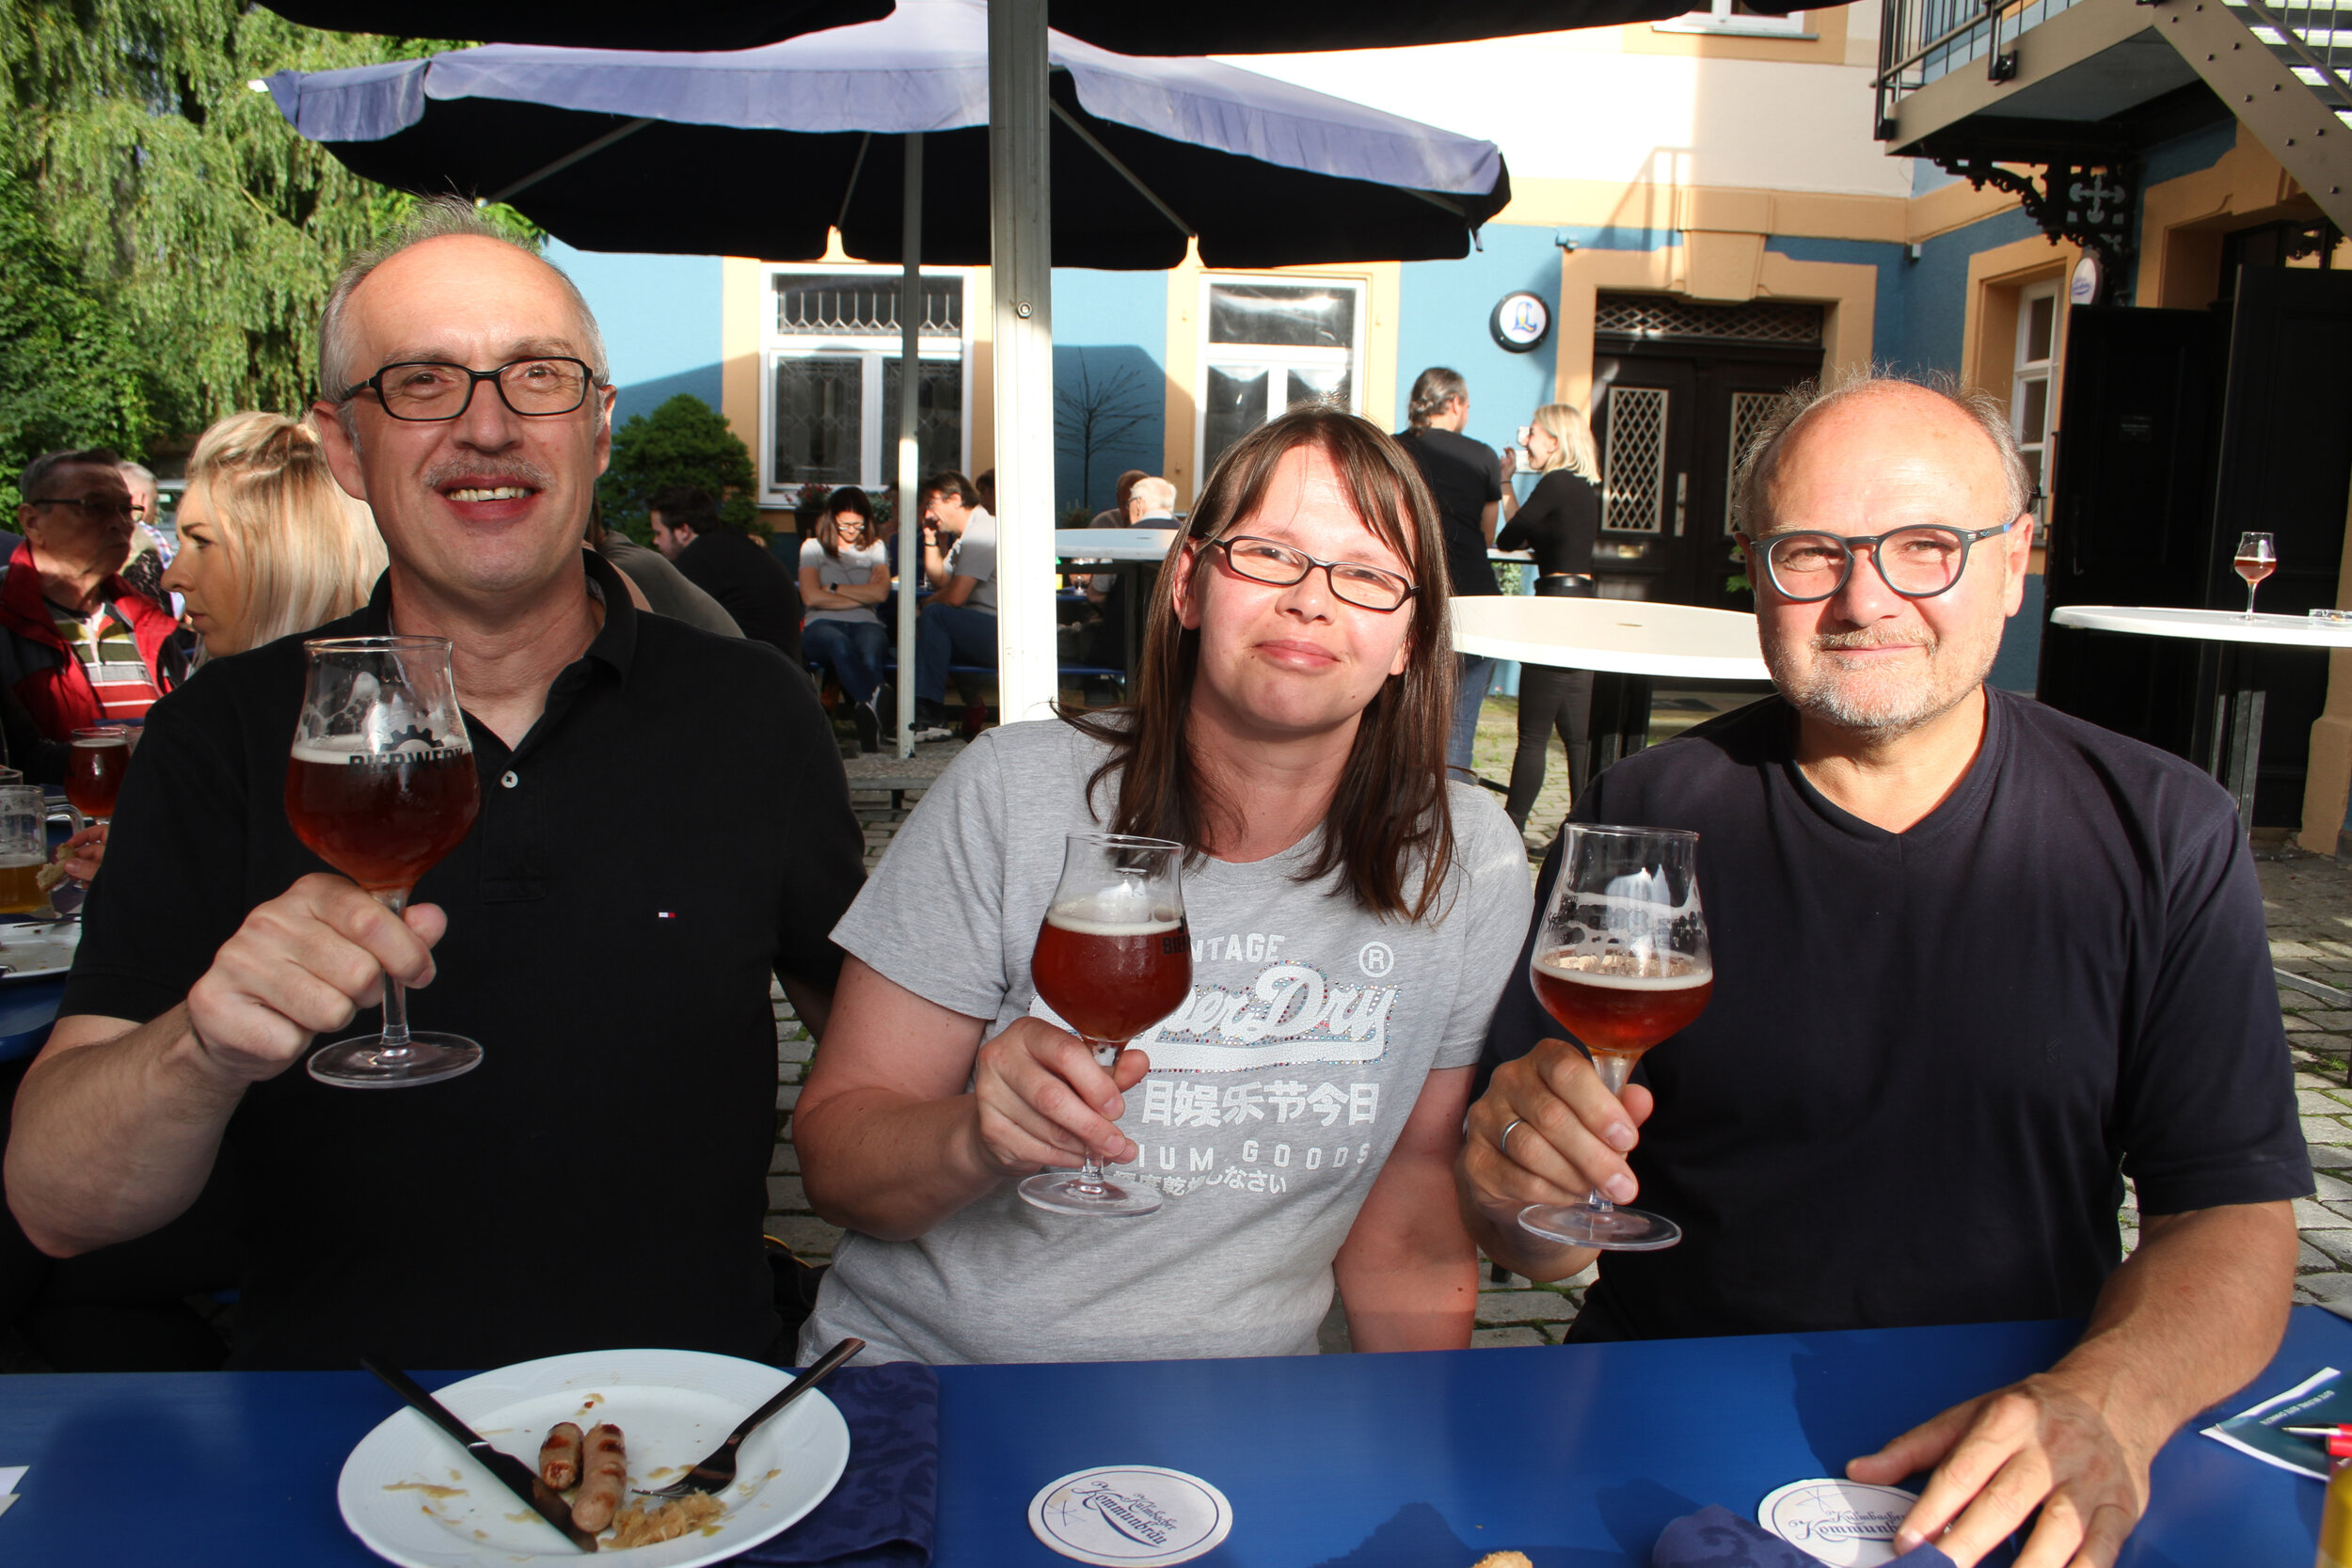  Jochen Kempf, Juliane Bienlein und Uwe Pachner haben bei der Bayerischen Rundschau einen Tisch zur Bier- und Bratwurst-Verkostung gewonnen. Sie wählten anders als die Fachjury bei den Bratwürsten. 